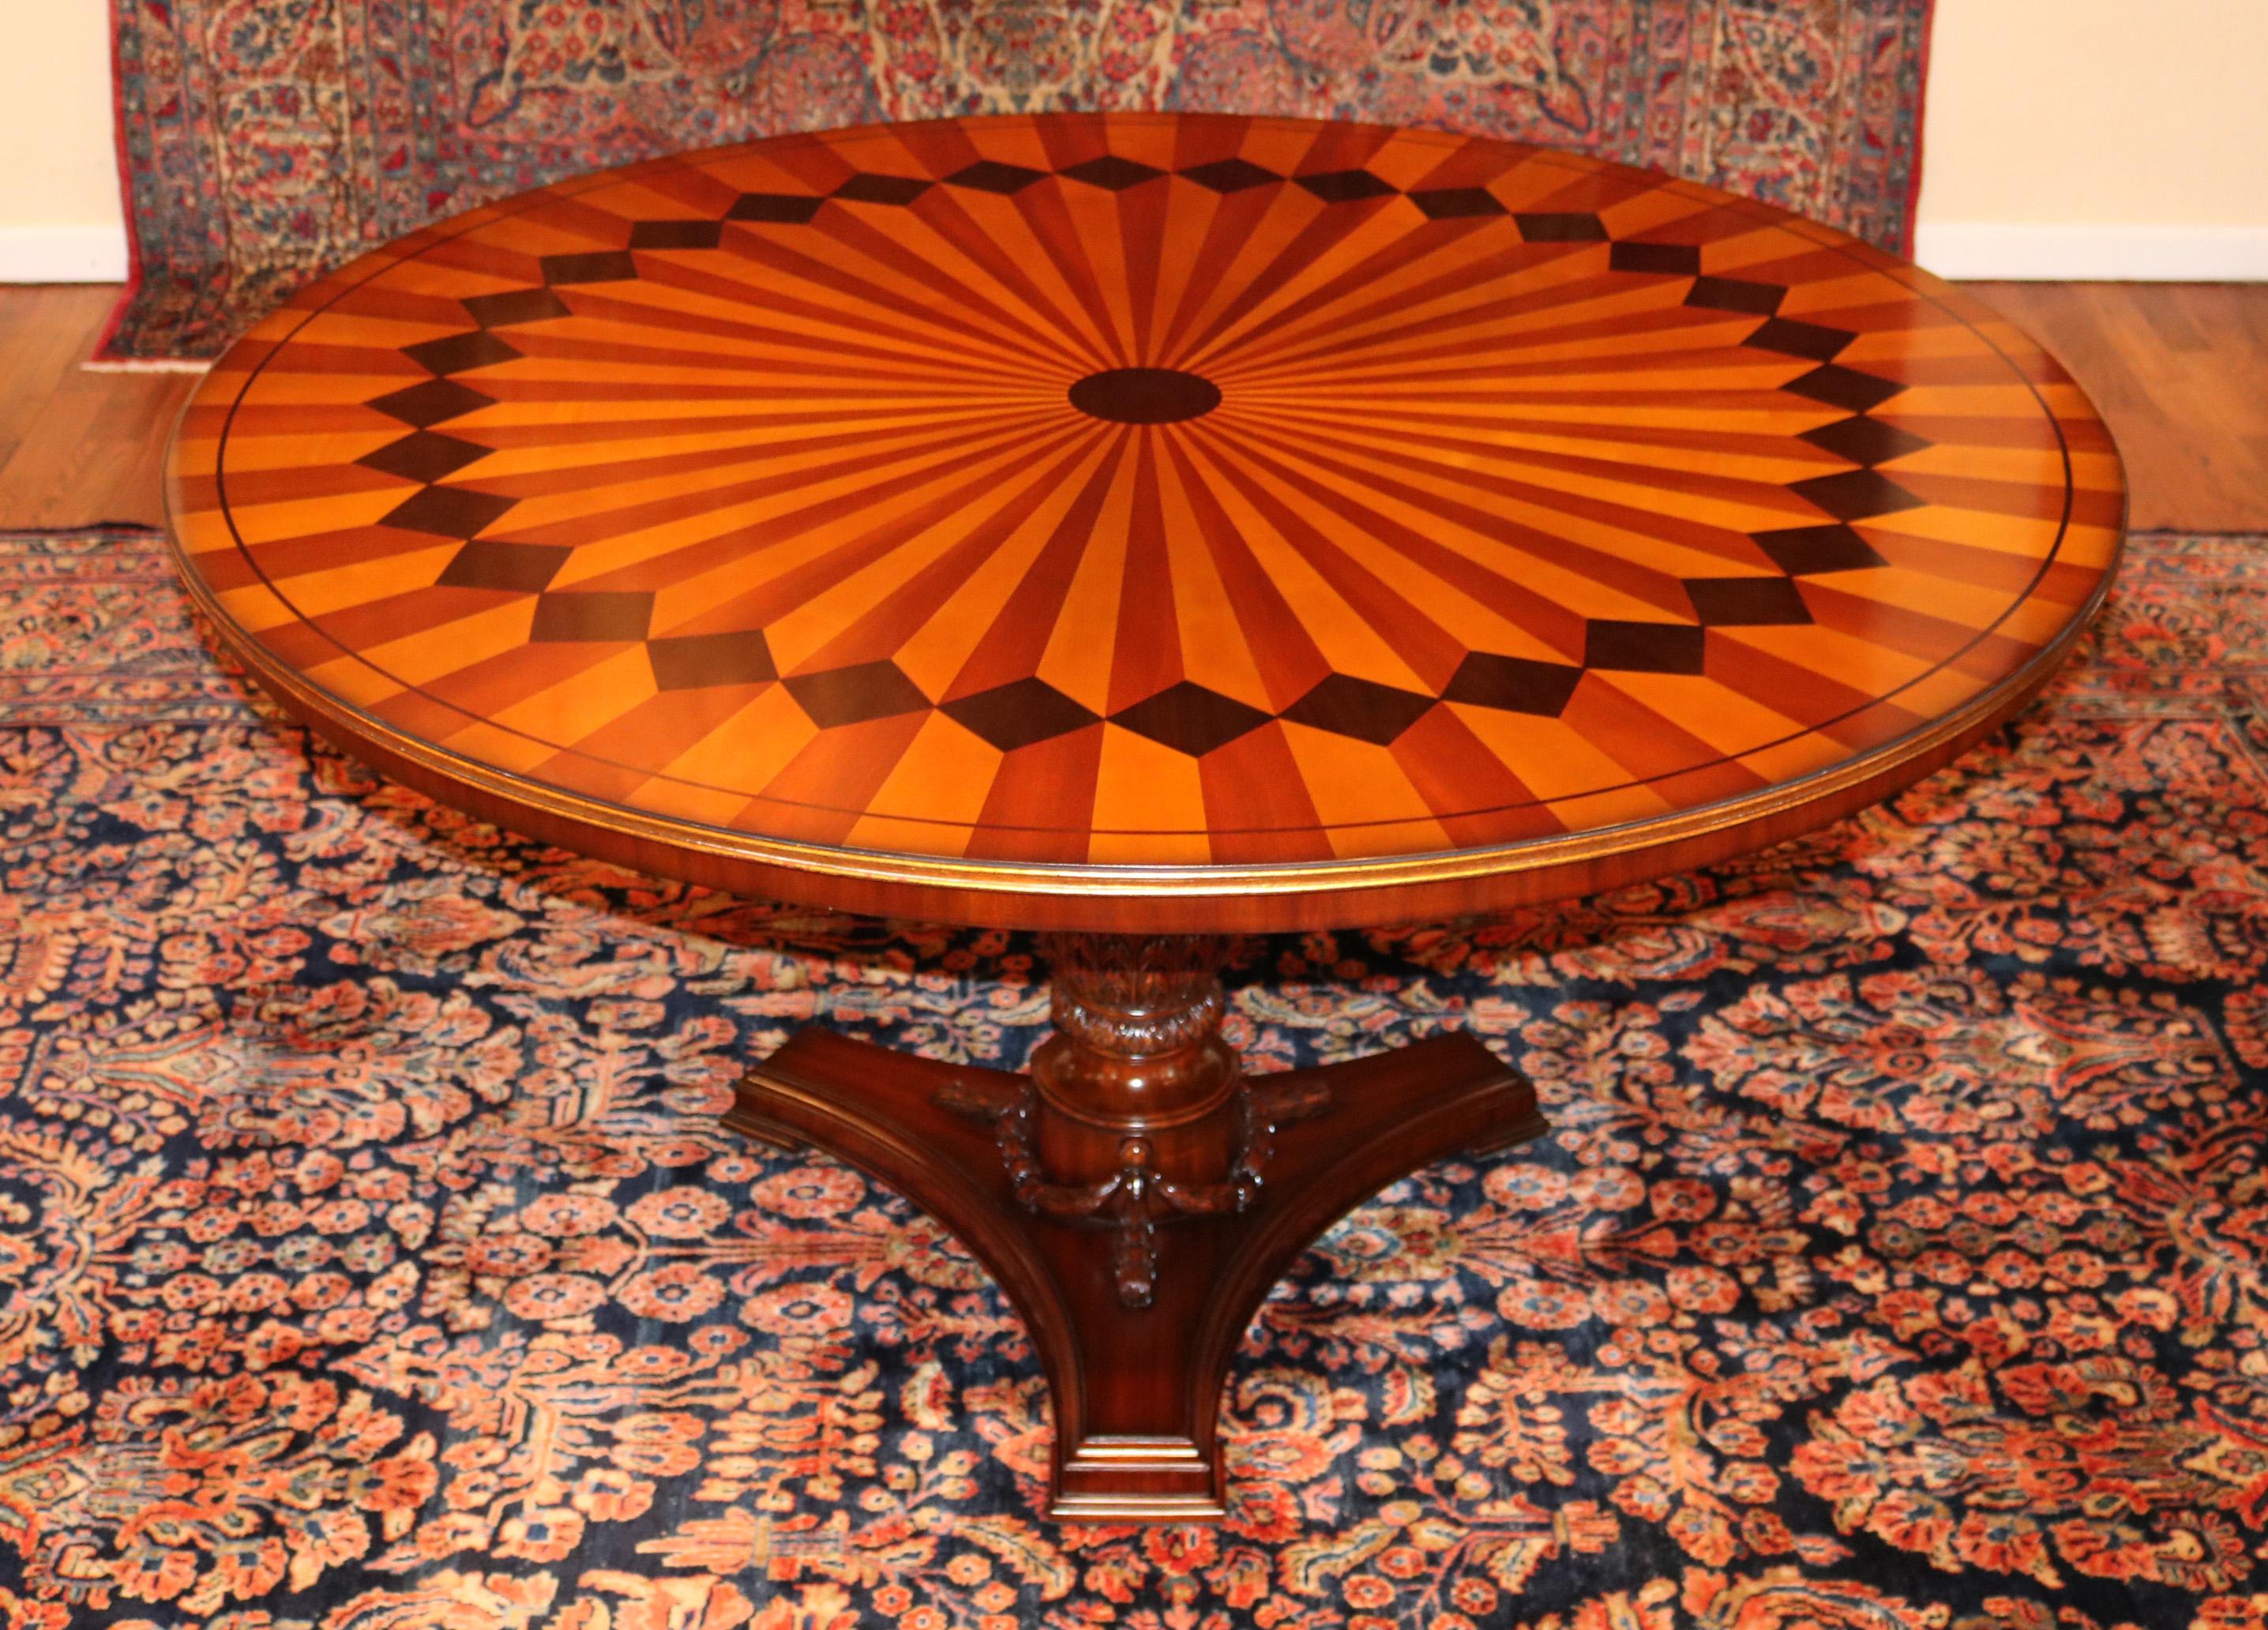 Superbe table de salle à manger centrale ornée en bois mixte marqueté et doré de style italien

Dimensions : 59